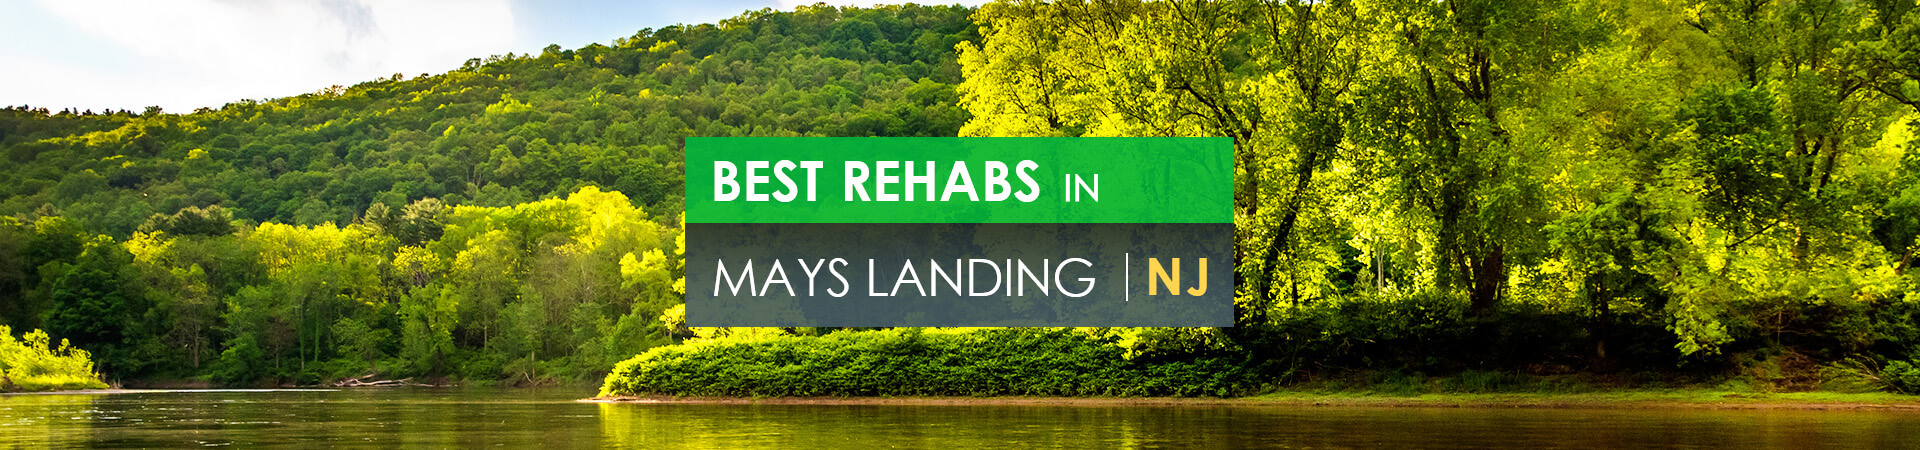 Best rehabs in Mays Landing, NJ